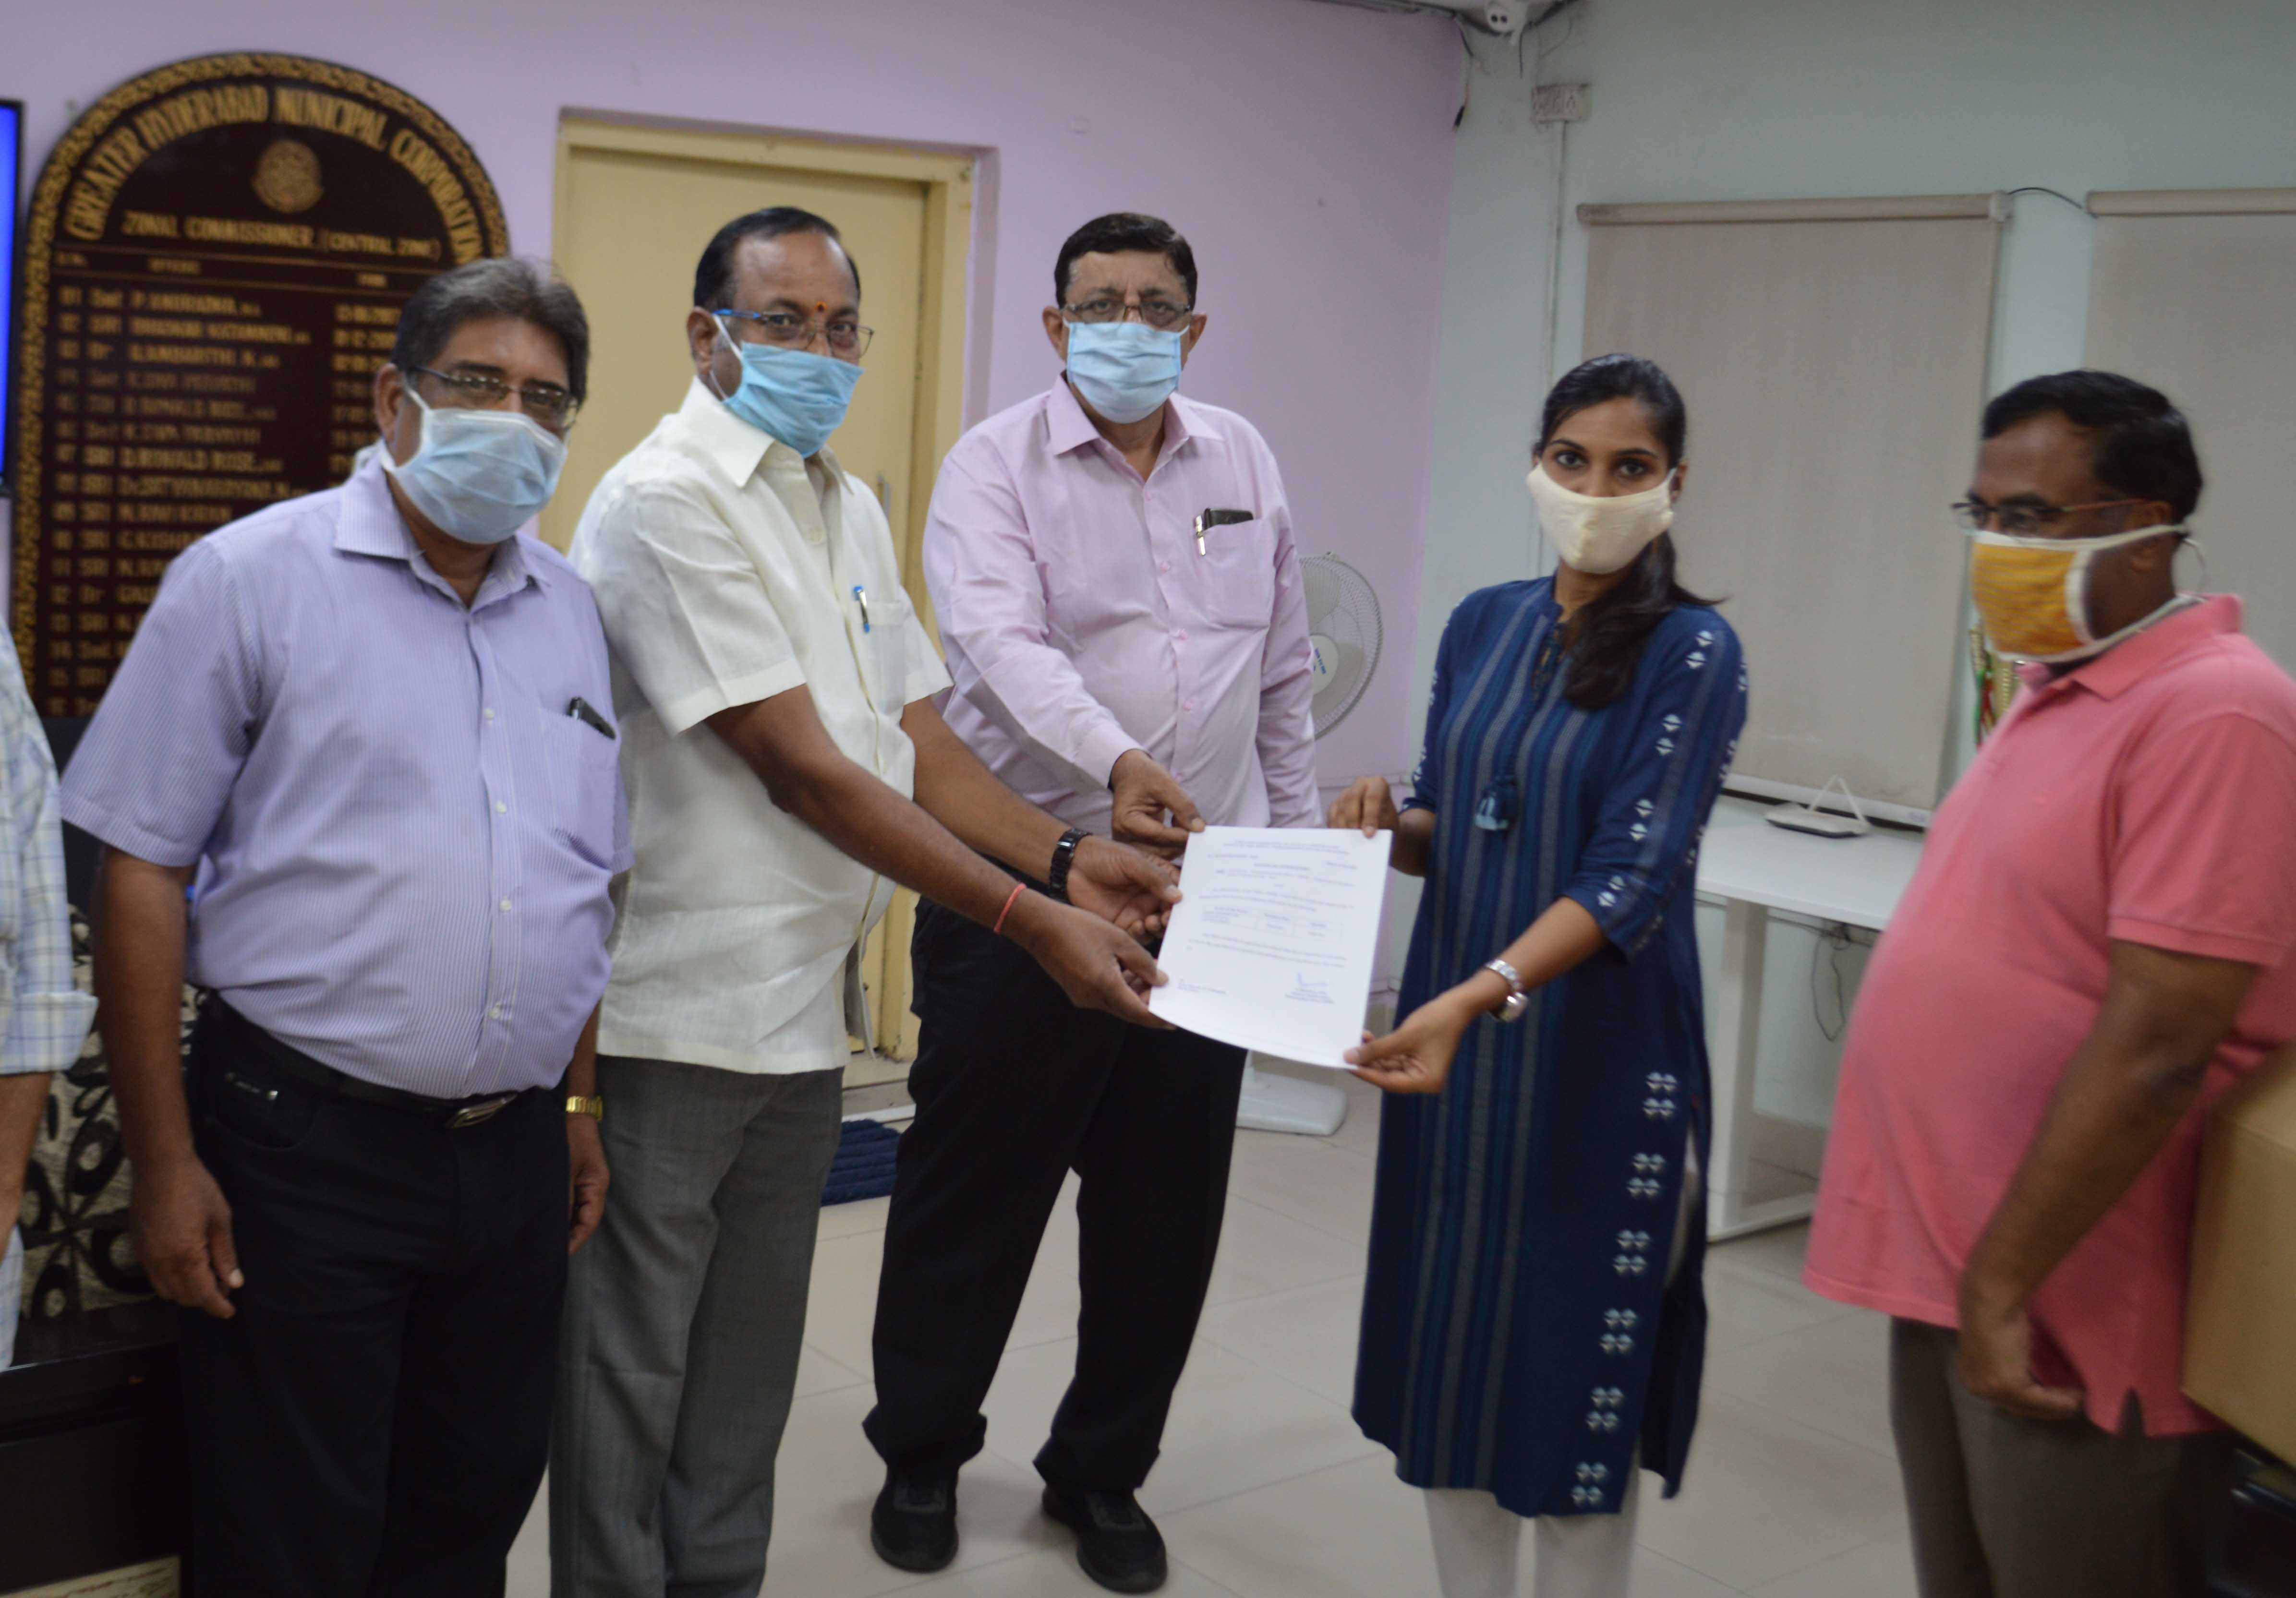 Praful, Maddulete, Madan, P. Pravinya and D. Ramchandram, seen donating 2000 hand sanitisers